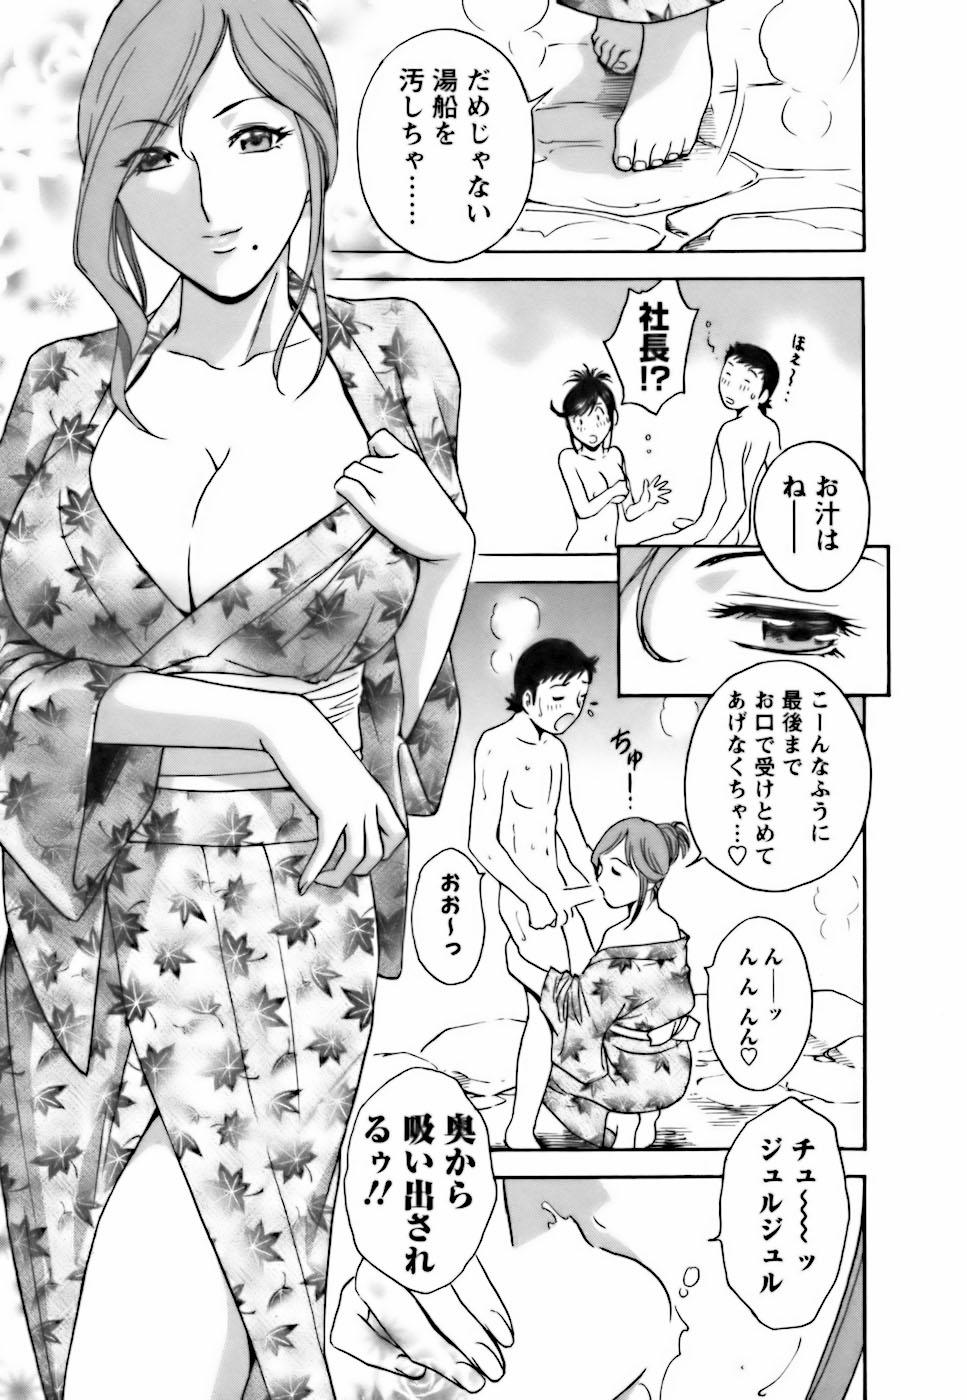 [Hidemaru] Mo-Retsu! Boin Sensei (Boing Boing Teacher) Vol.3 141